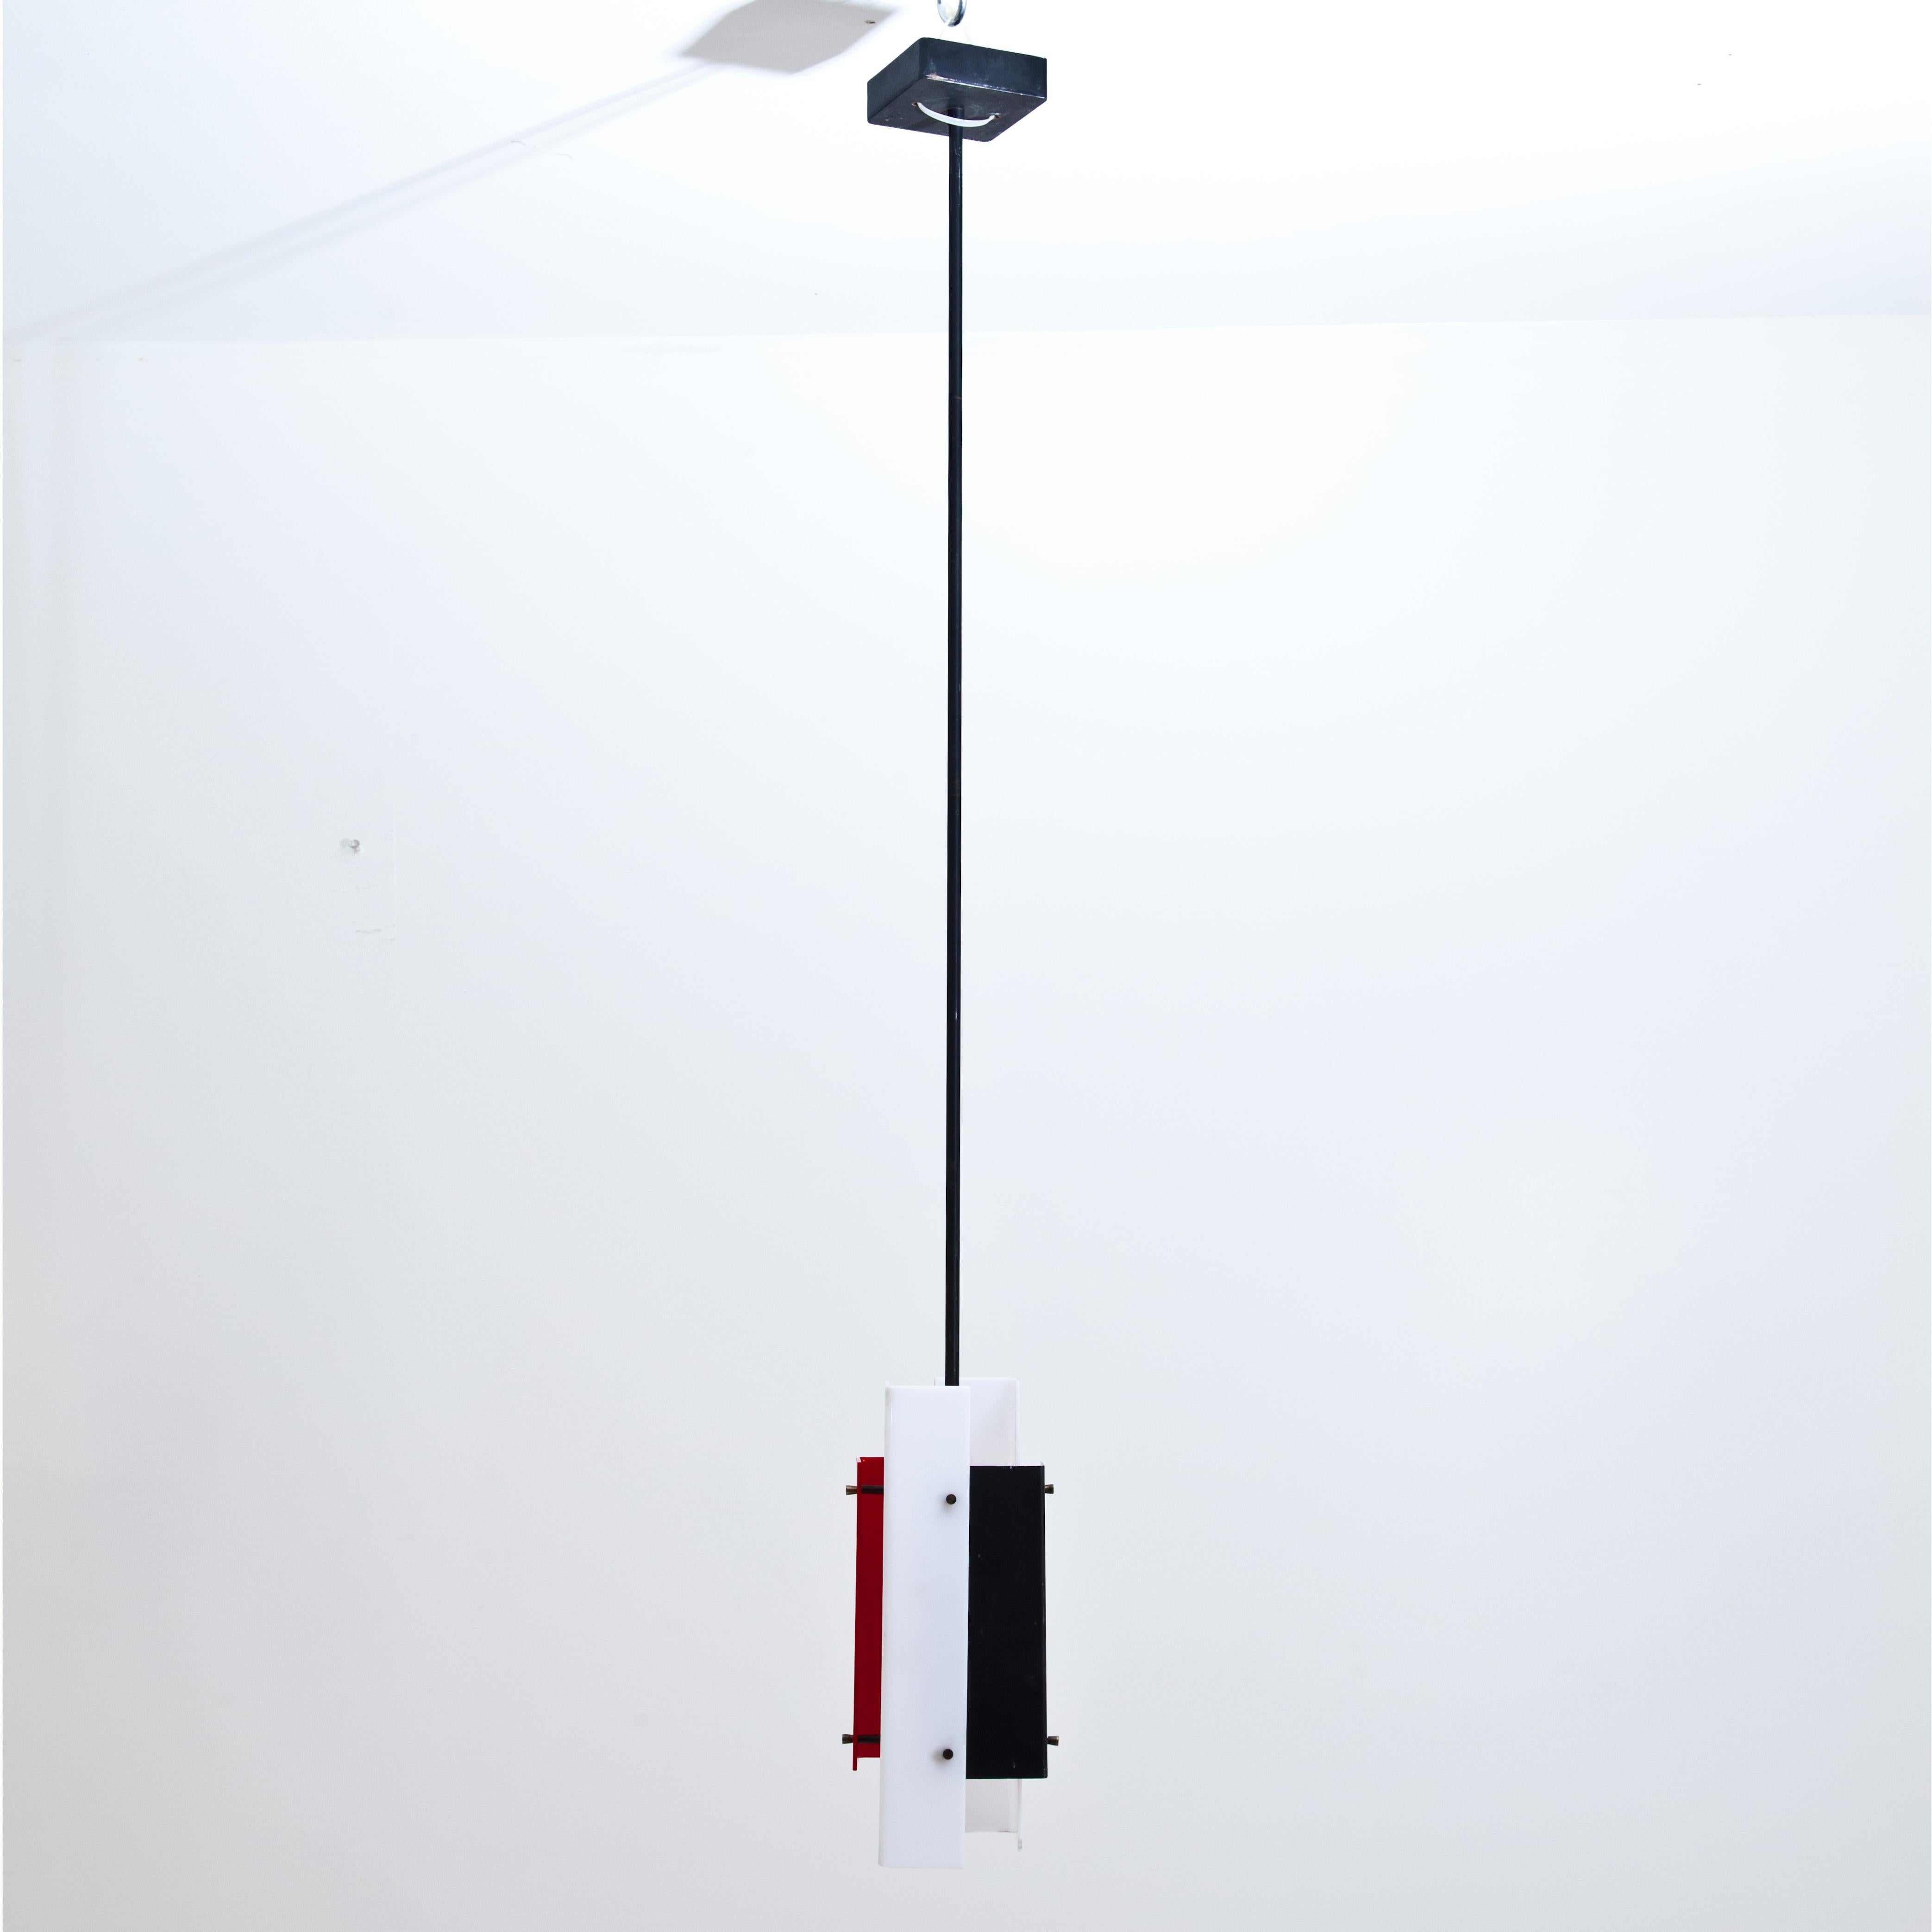 Ensemble de trois plafonniers 315 par Jean Boris Lacroix pour Luminalite. Lampe suspendue avec une tige en métal noir composée d'abat-jours rectangulaires en acrylique blanc, rouge et noir. L'ensemble comprend 3 pendentifs. Lit : Clémence & Didier